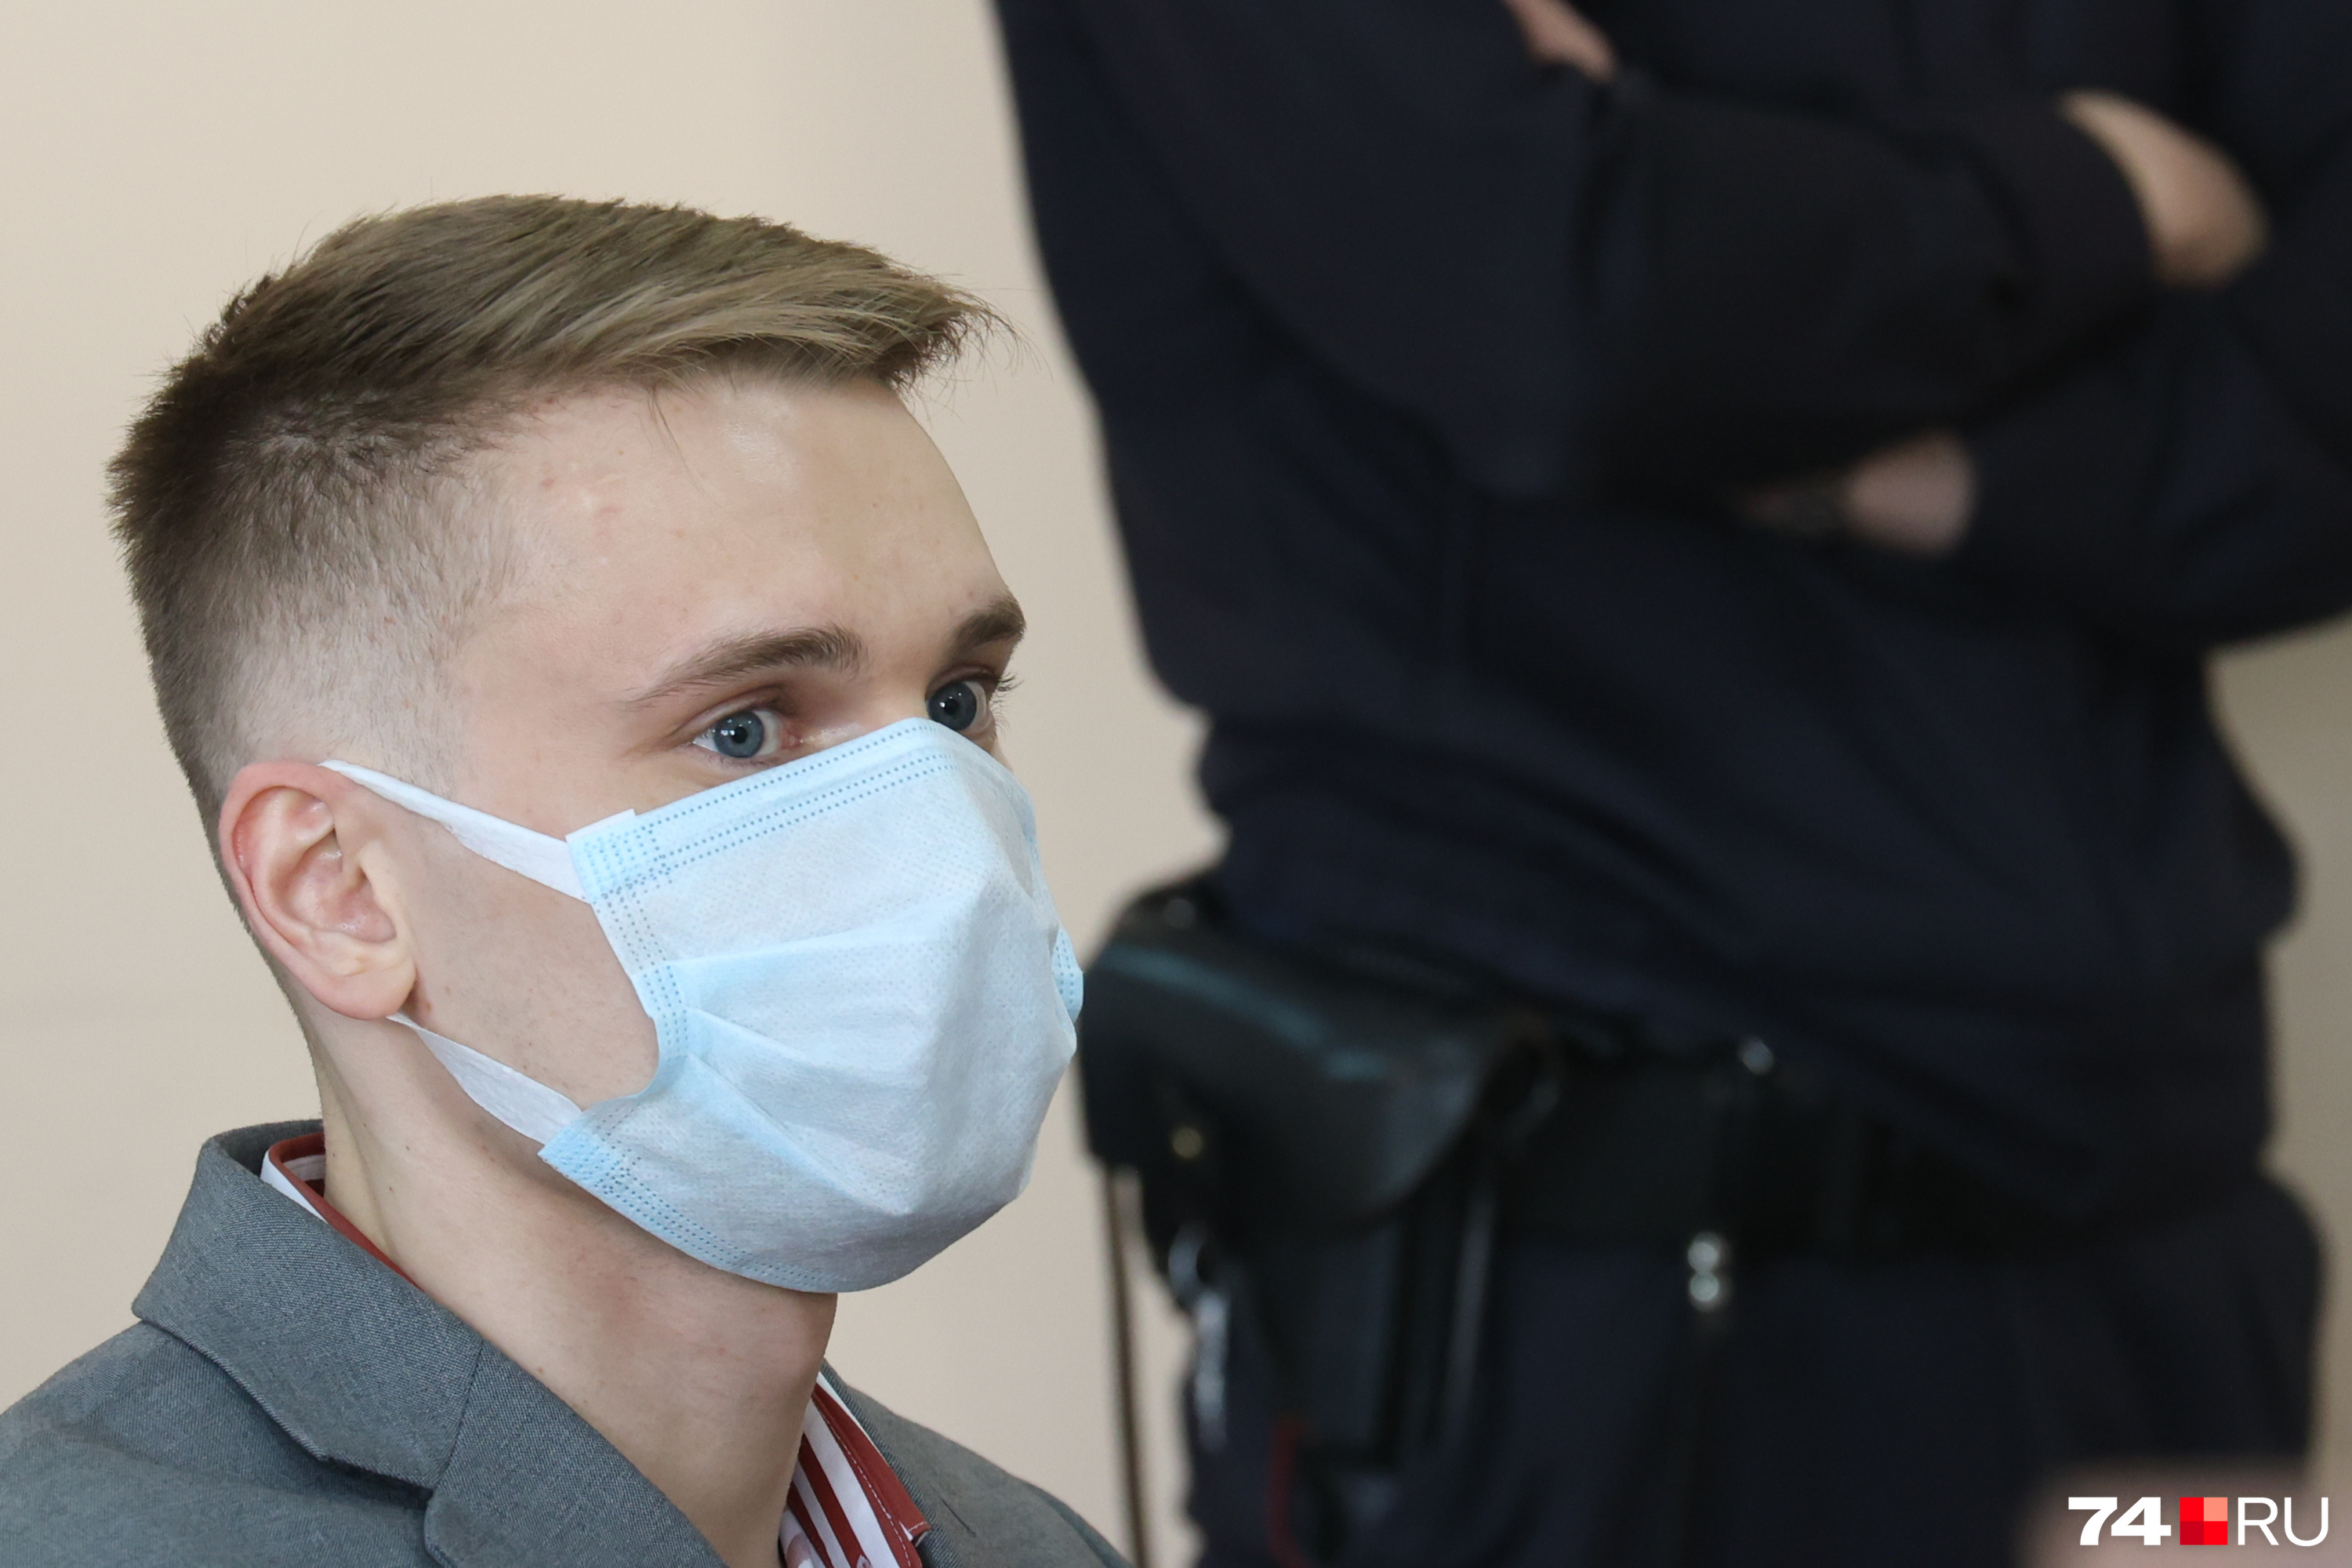 Дмитрий Зыков предпочел скрыть лицо под медицинской маской, хотя их ношение в суде теперь необязательно